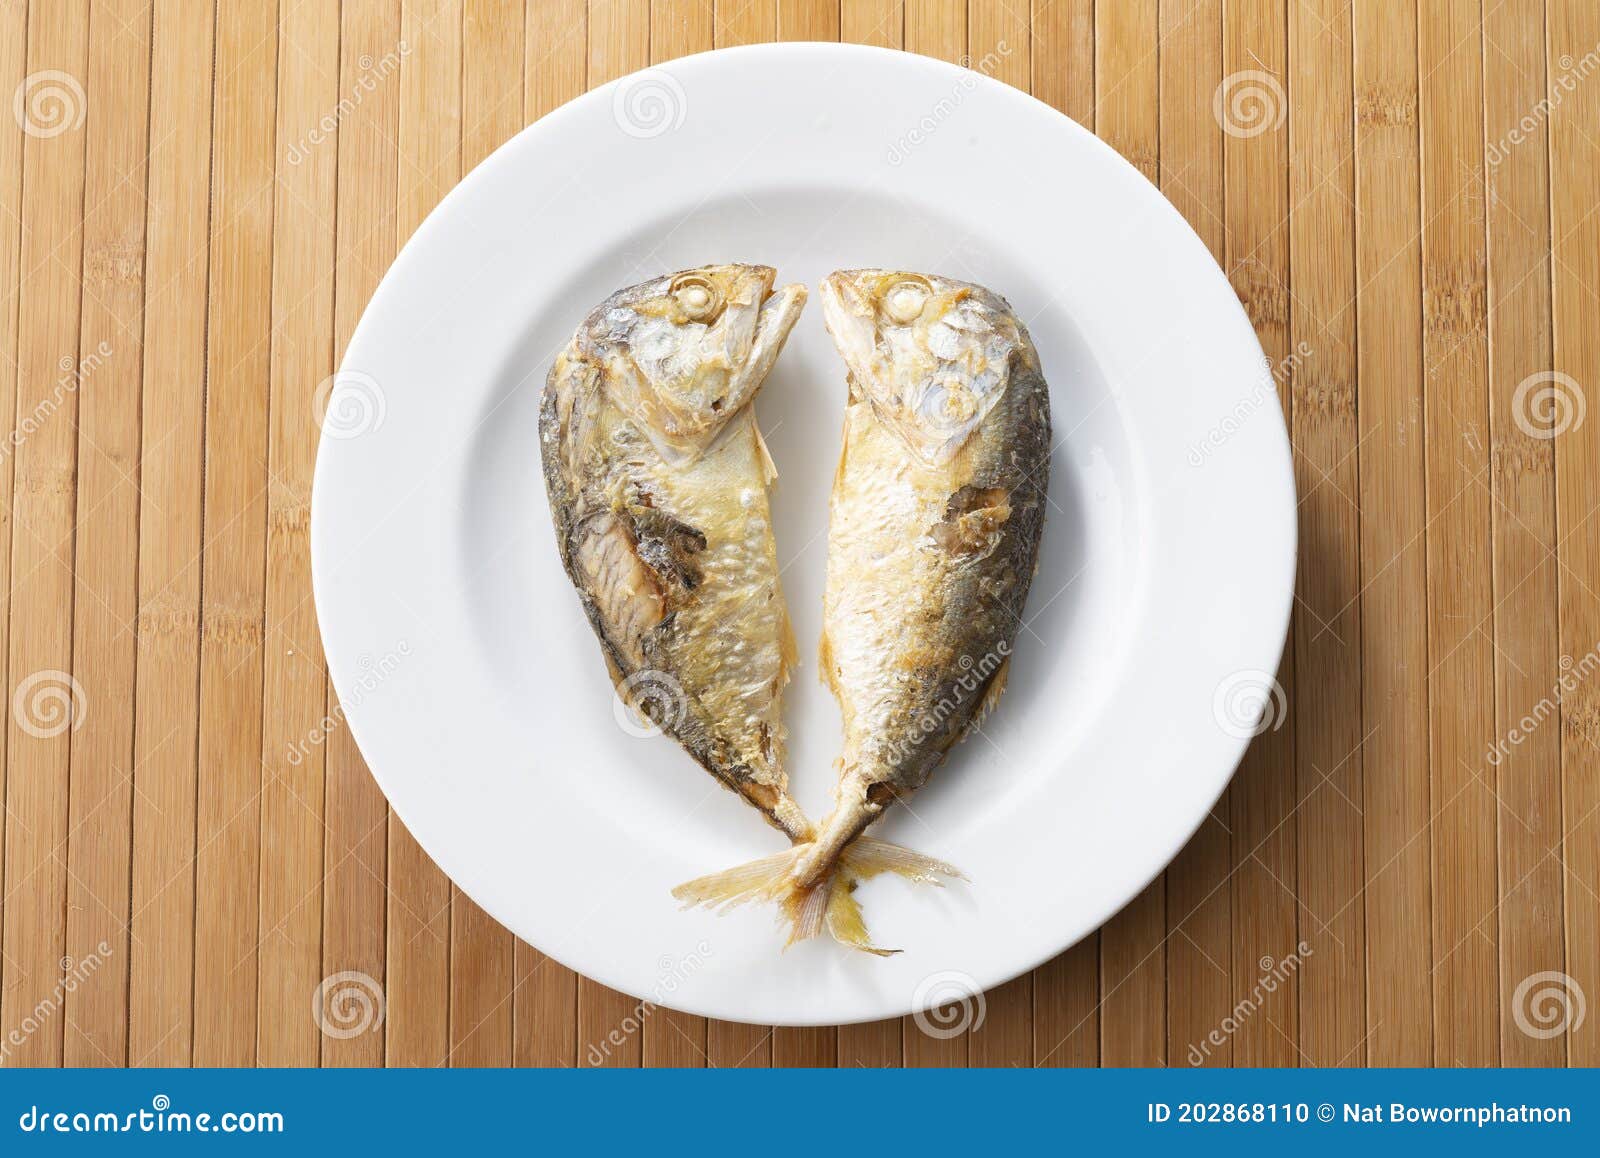 鱼子酱红鱼子酱高清摄影大图-千库网